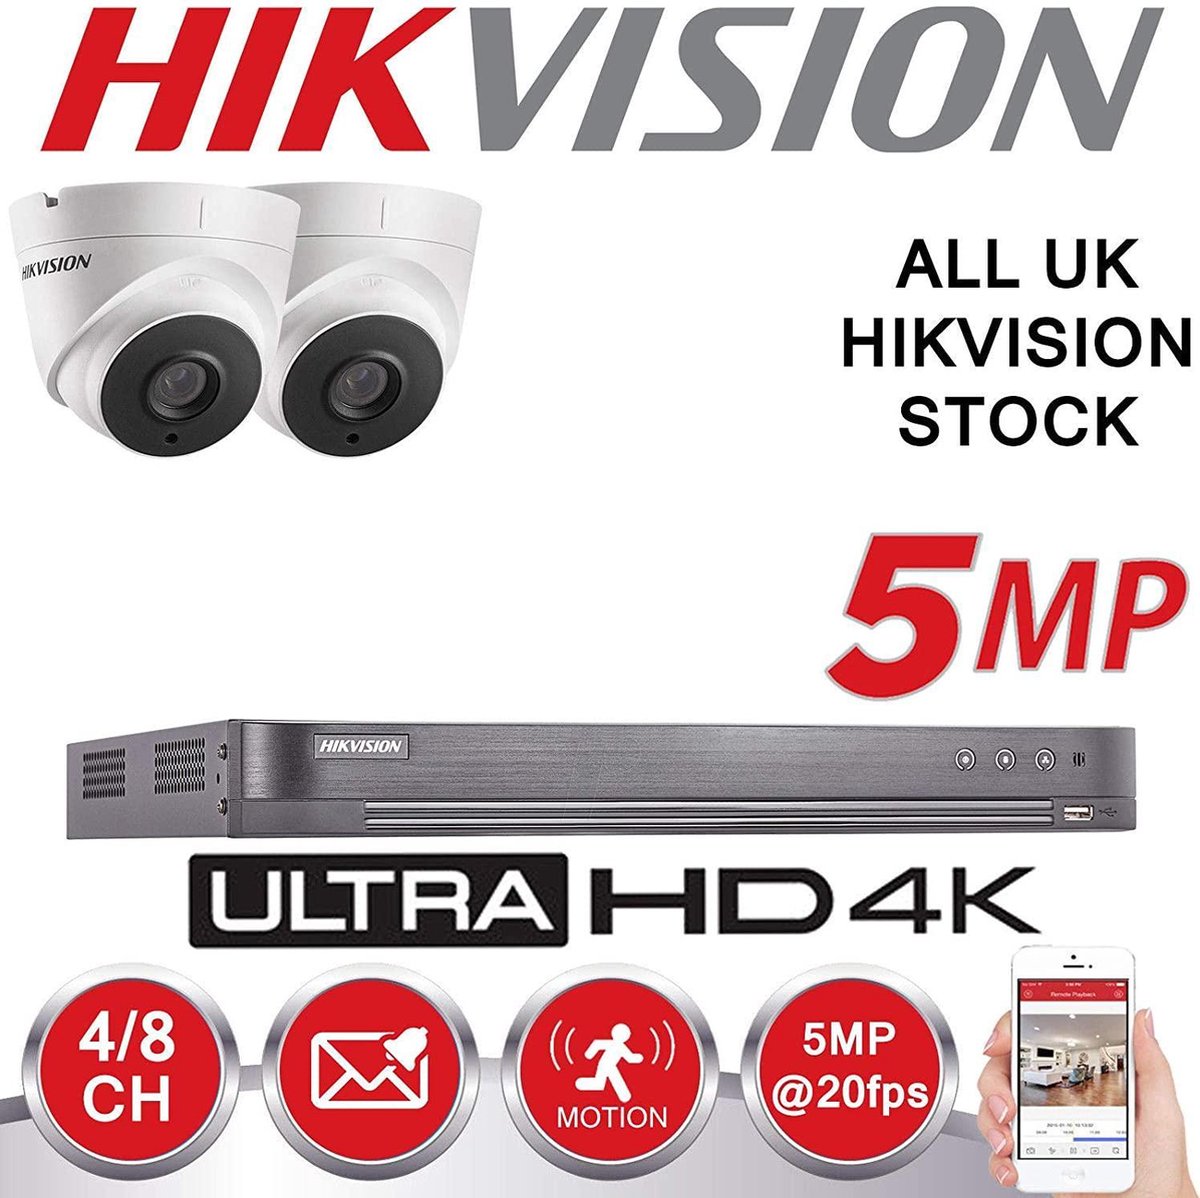 HIKVISION bewakingscamera set, 5 MP, 4K, UHD, DVR, 4-kanaals, HD, voor buitengebruik, woningbeveiliging - 1TB HDD